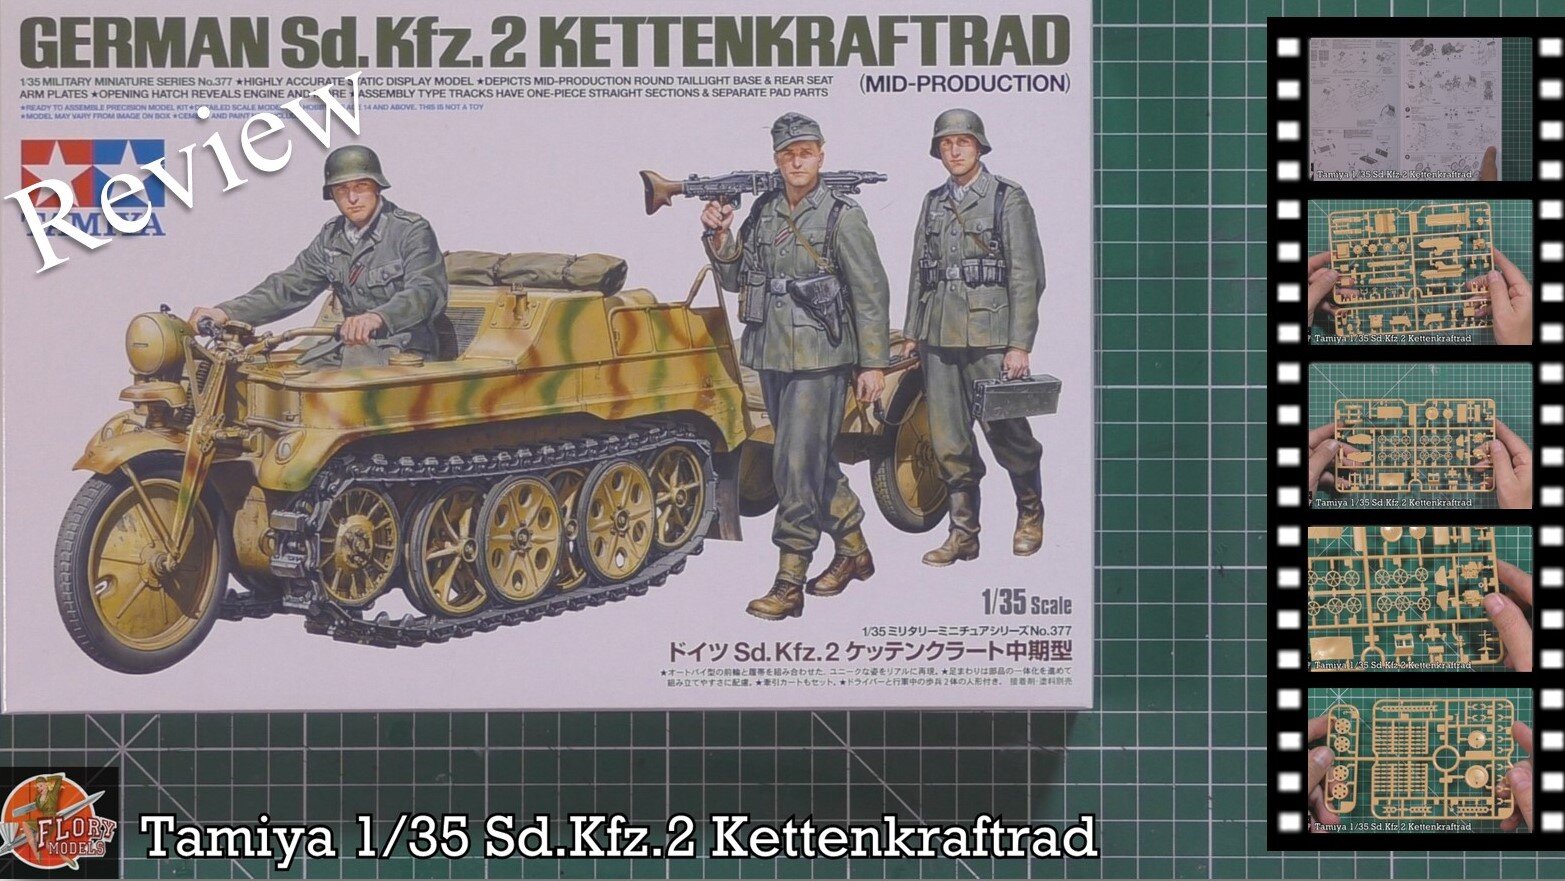 TAMIYA (1/35) German Sd.Kfz.2 Kettenkraftrad (Mid-Production)